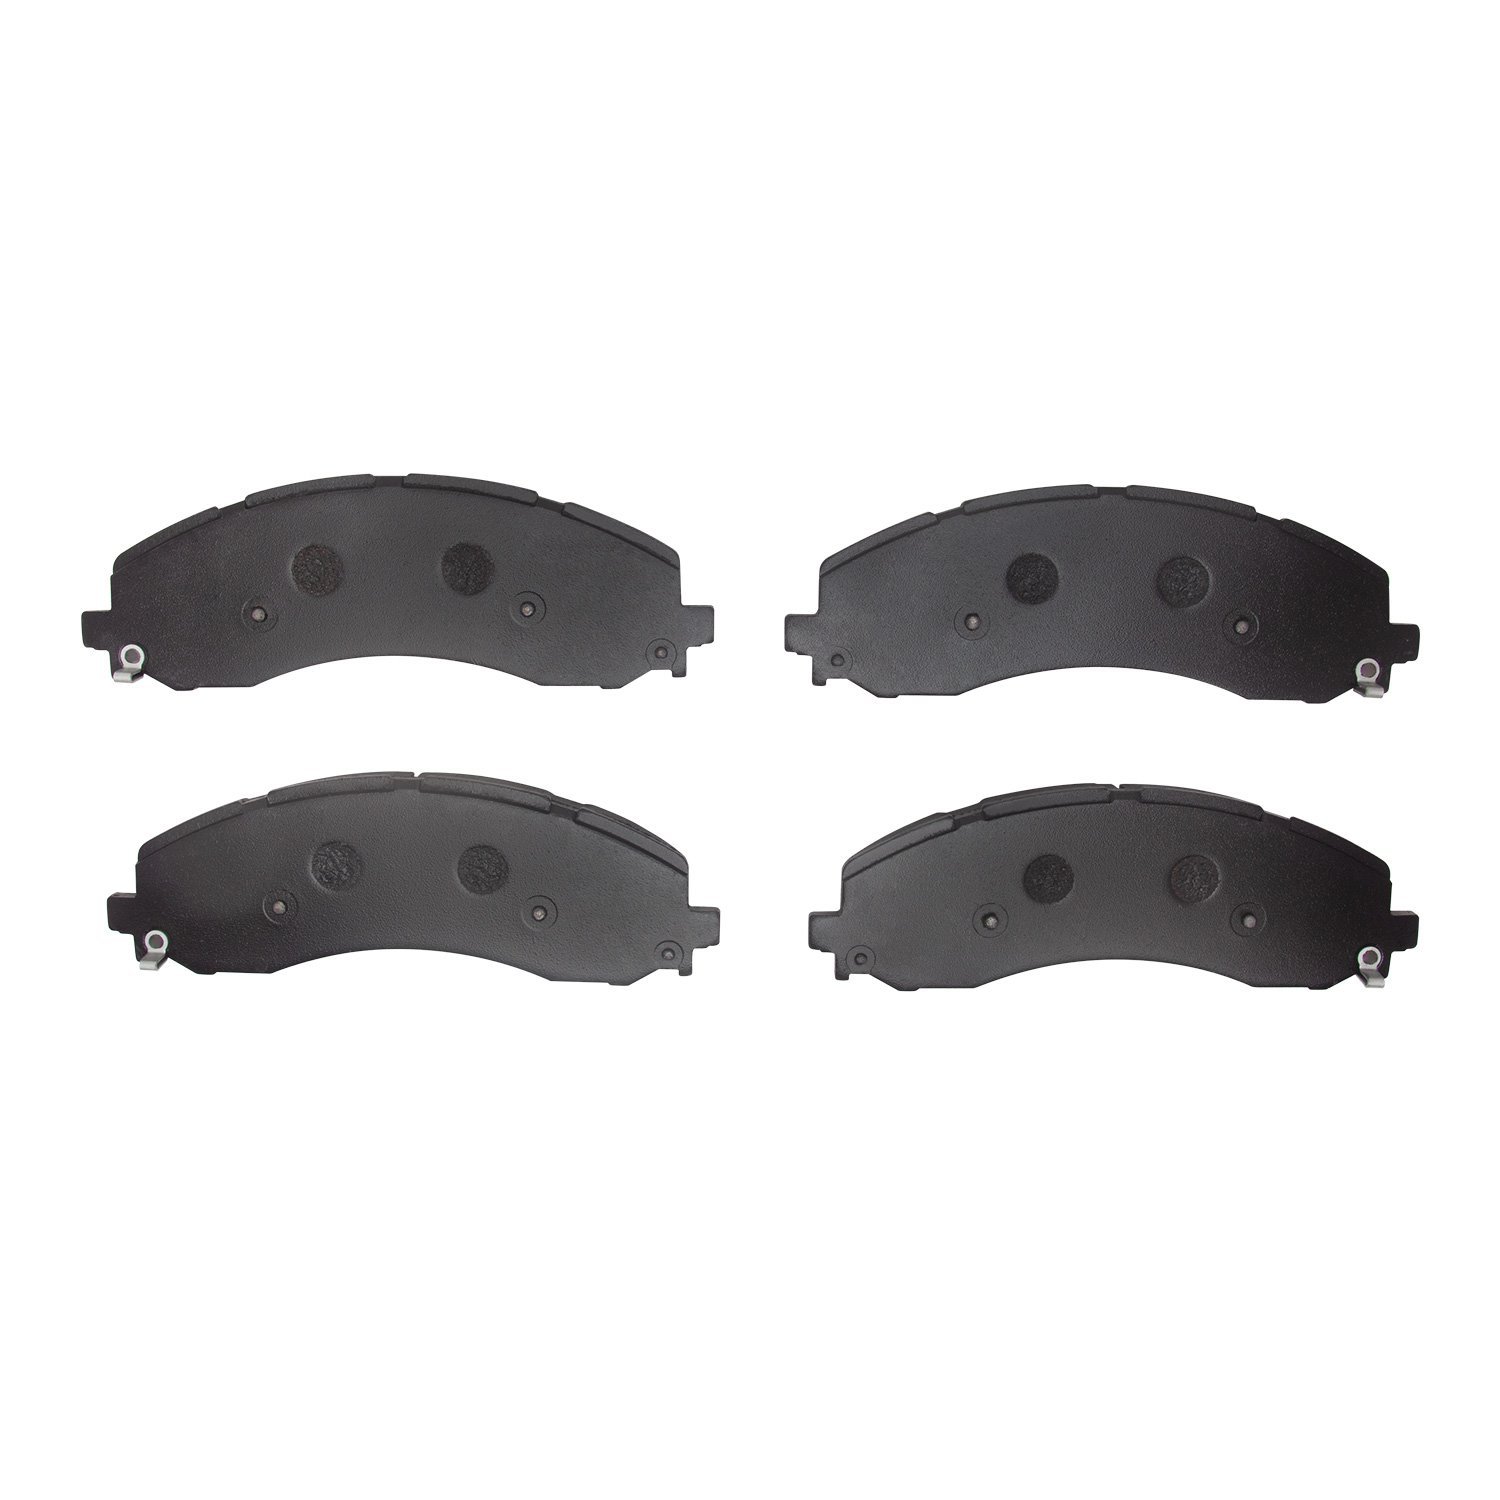 1214-2223-00 Heavy-Duty Semi-Metallic Brake Pads, Fits Select Mopar, Position: Front